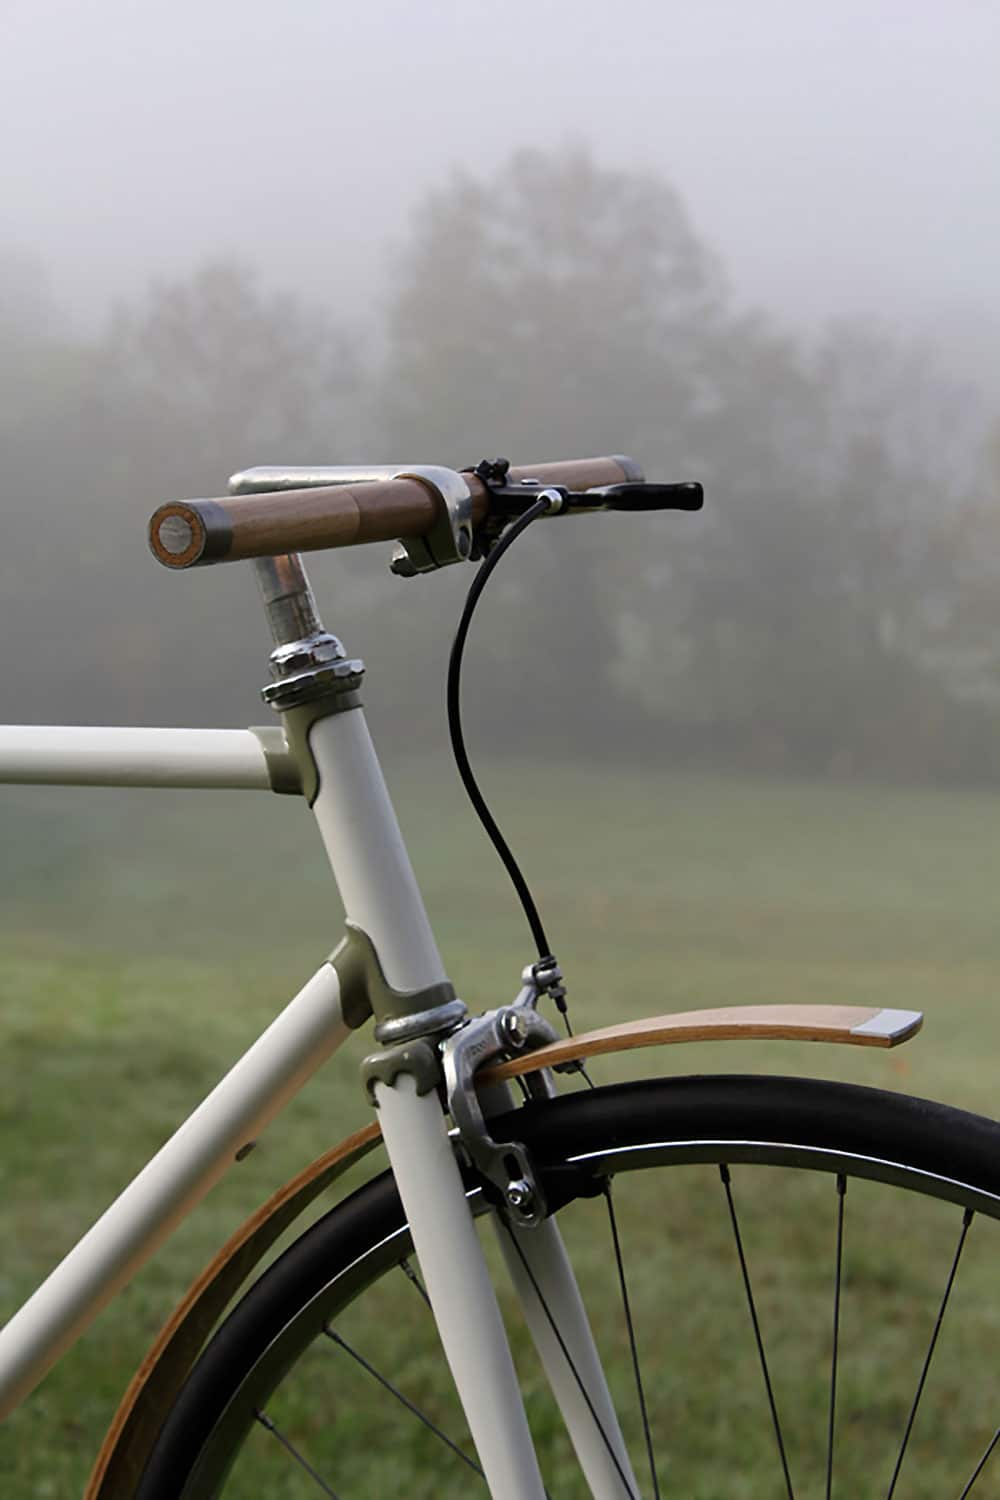 Oak Bicycle, le mélange du bois et de l'acier